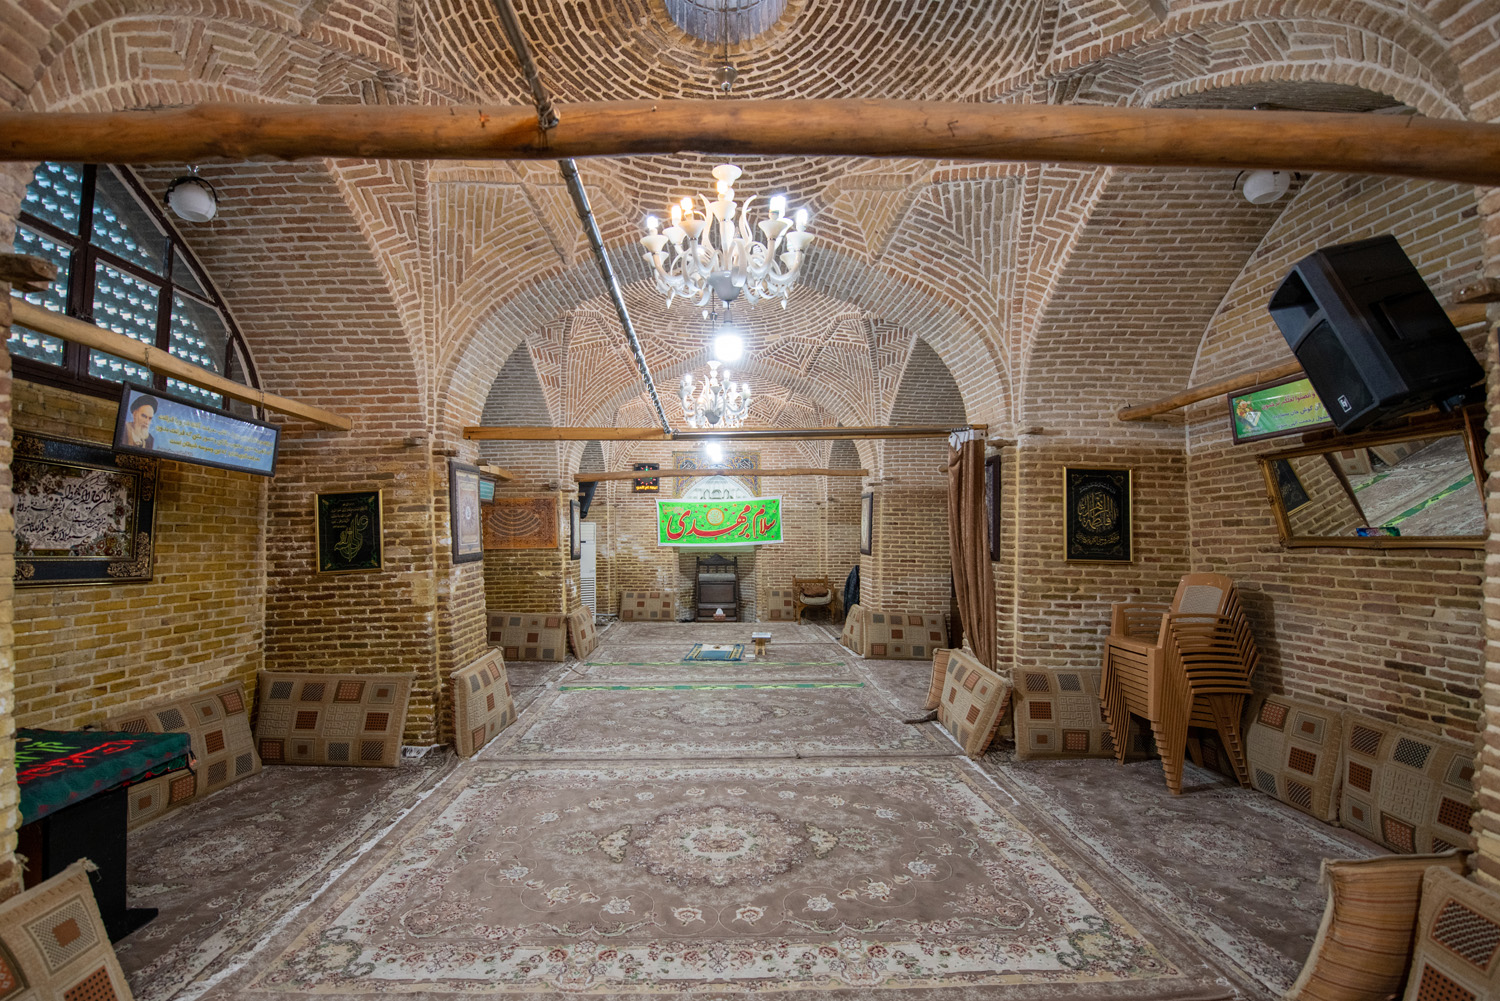 مسجد پامنار, مسجد پامنار, موسسه فرهنگی هنری اردیبهشت عودلاجان